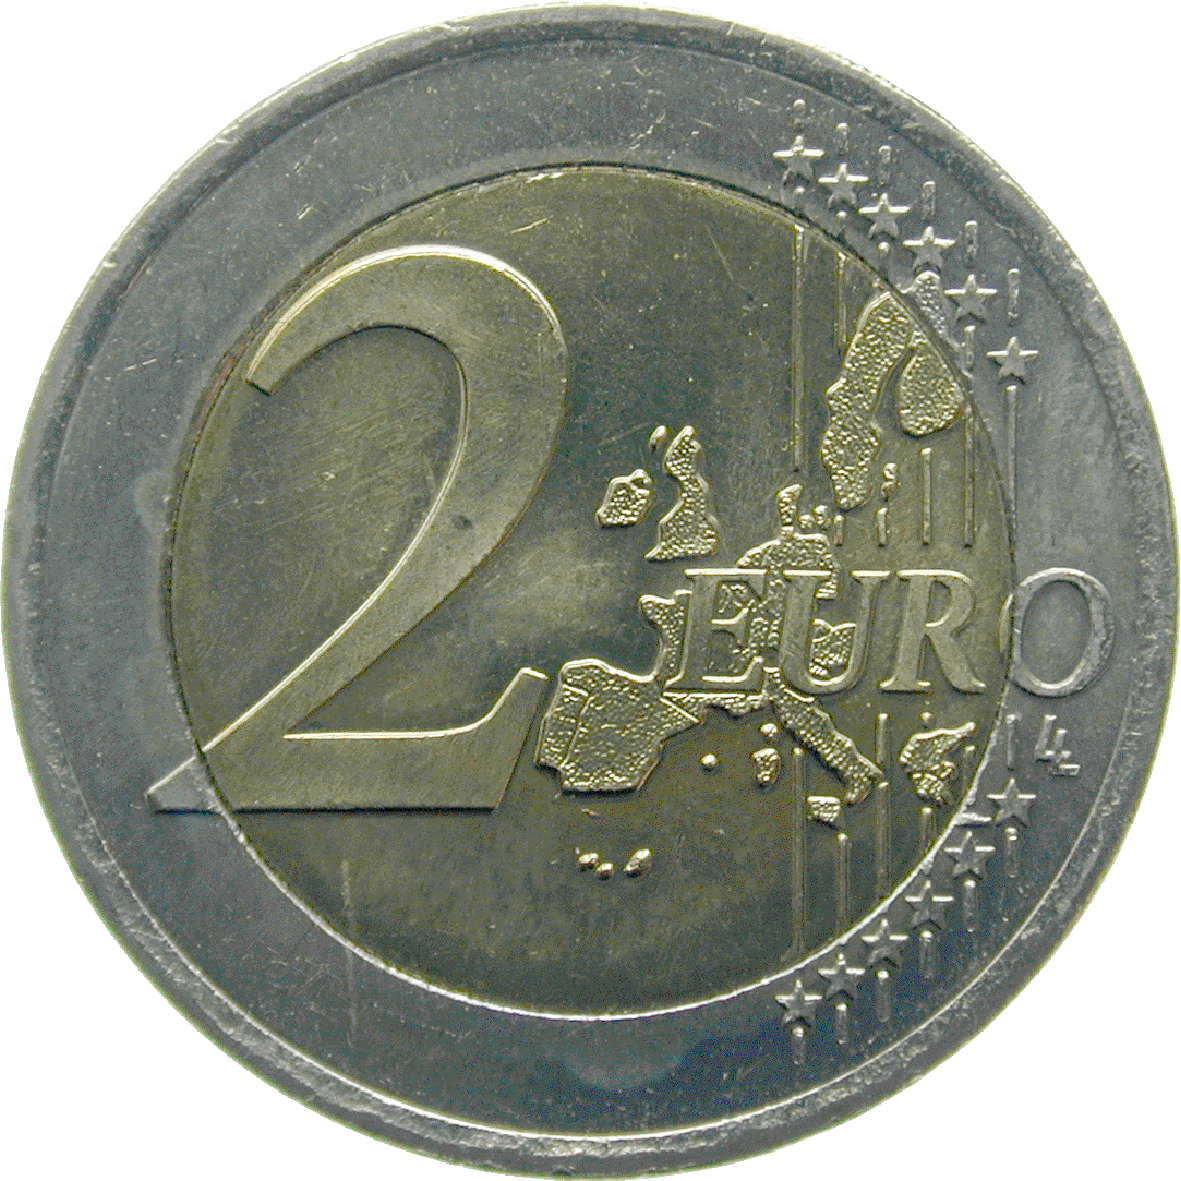 Republik Österreich, 2 Euro 2002 (obverse)